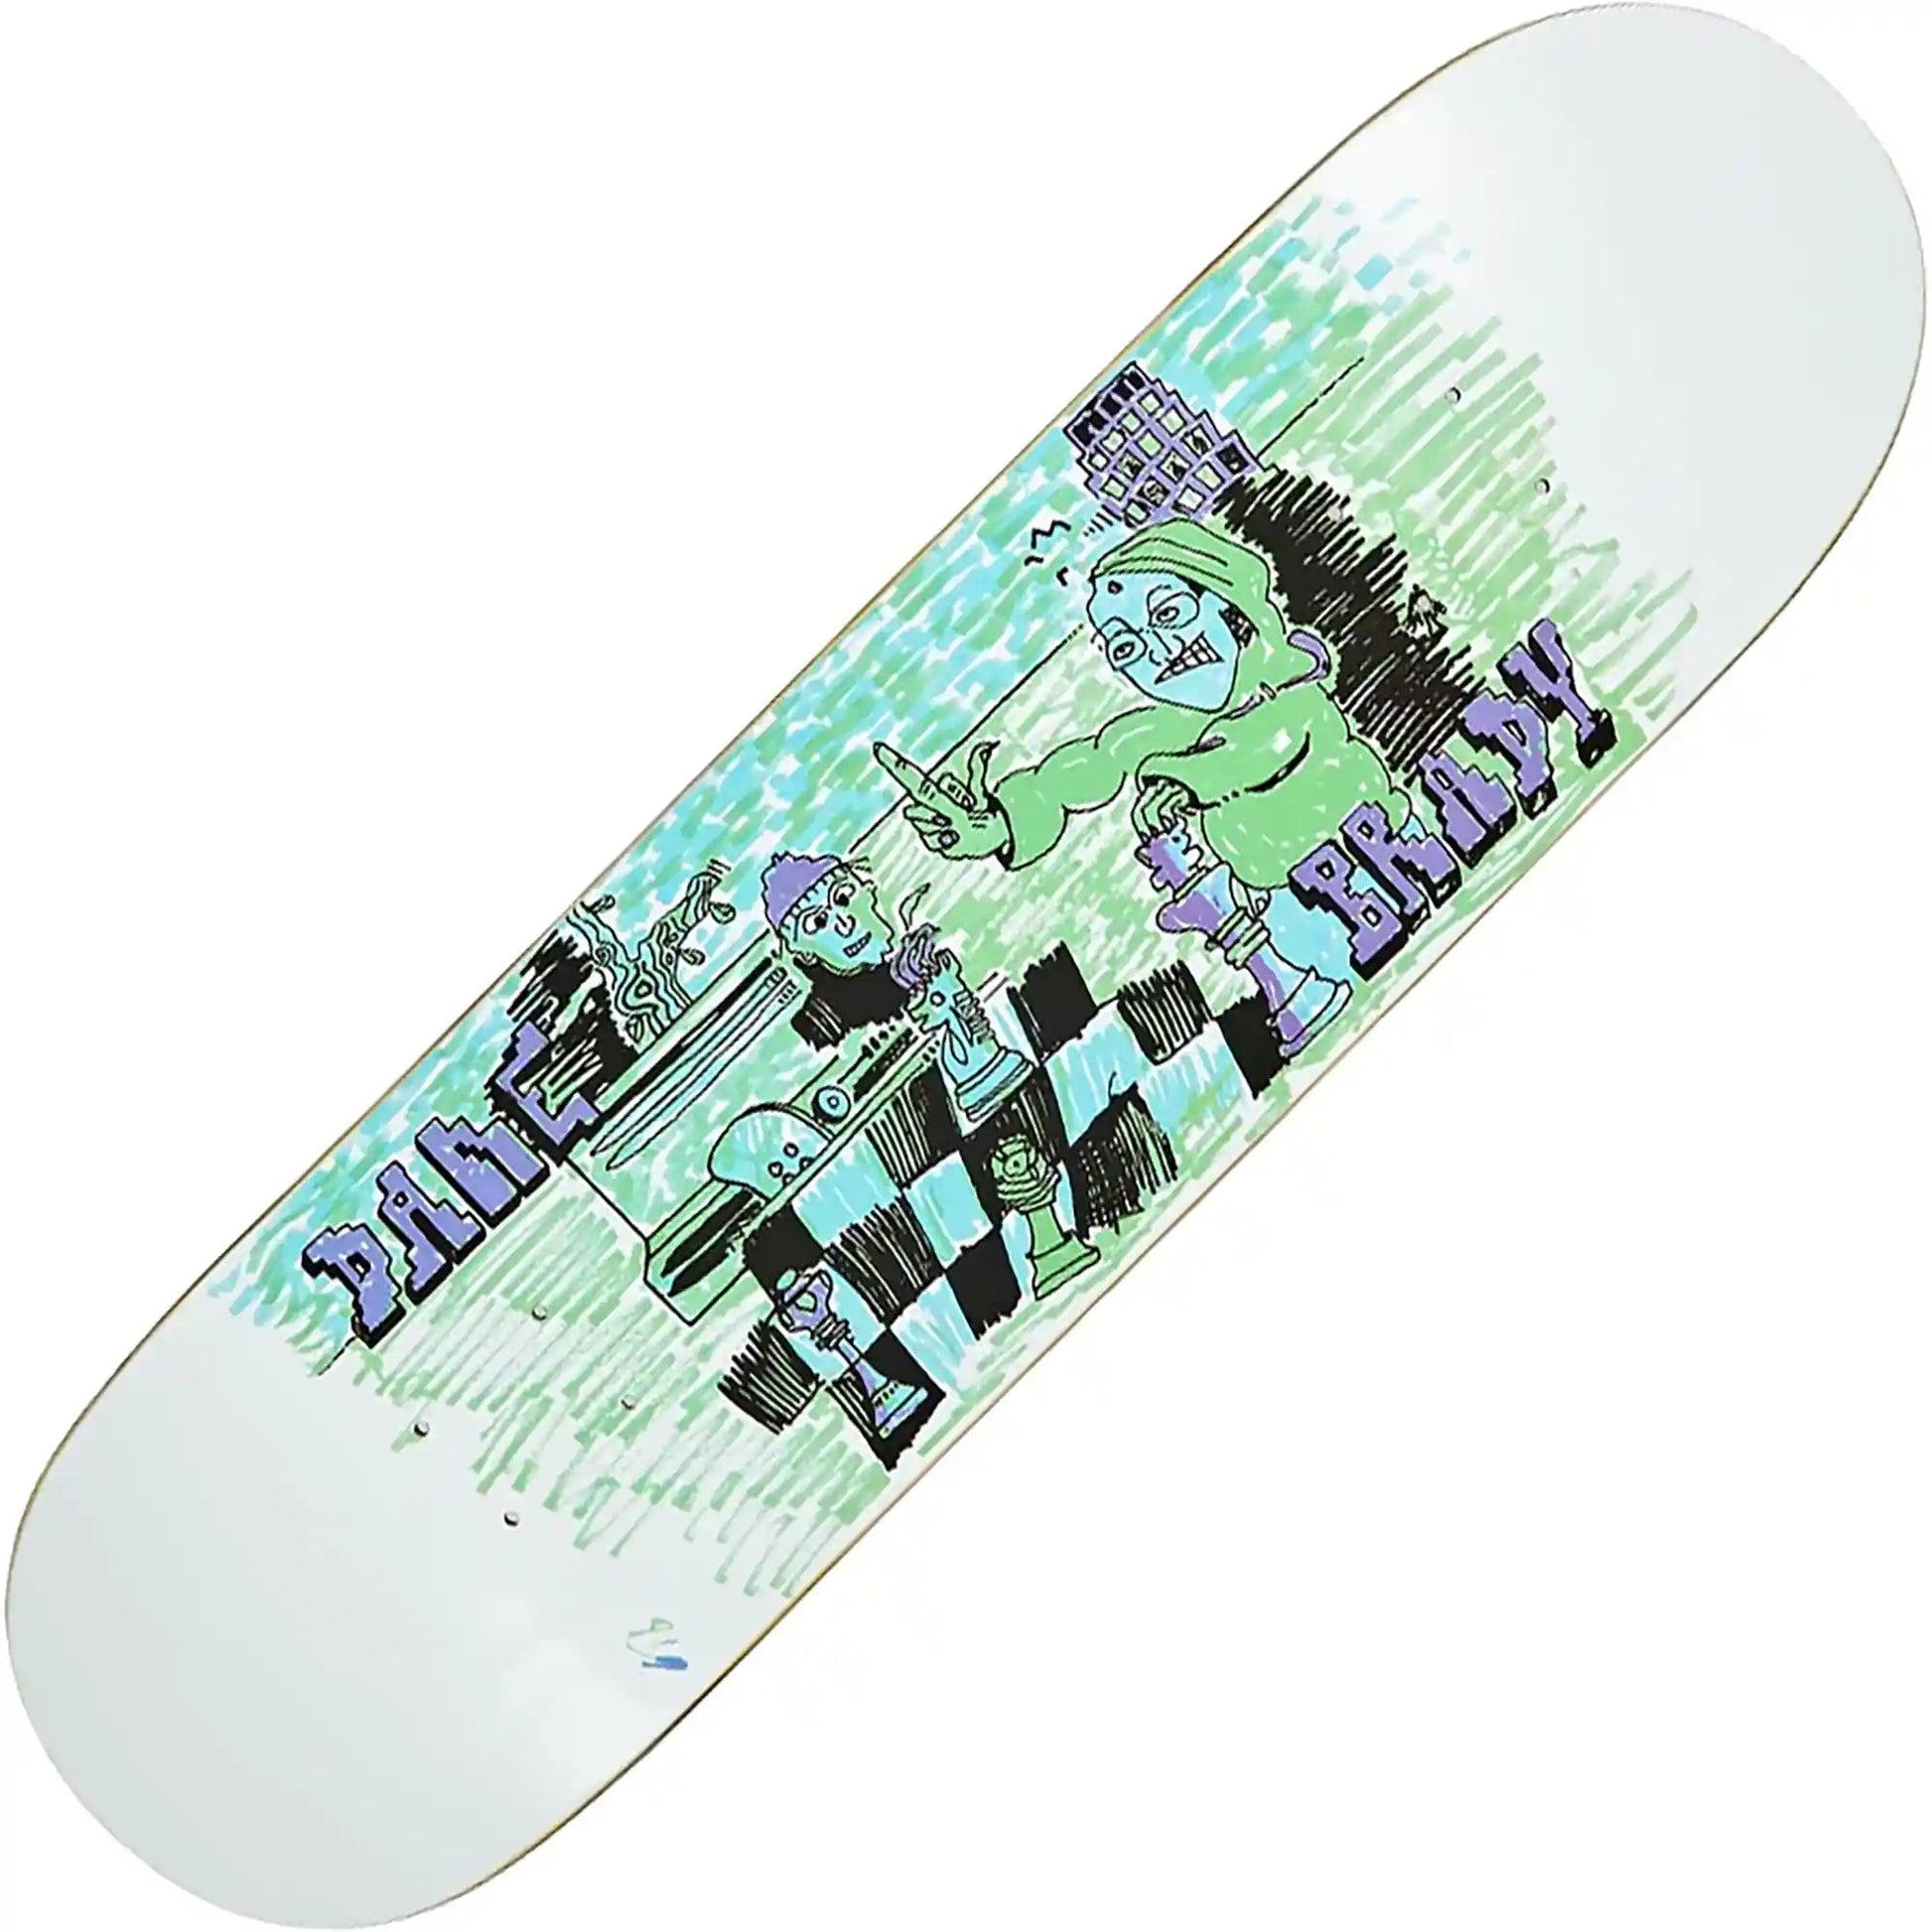 Polar Dane Brady Checkmate Deck (8.0") - Tiki Room Skateboards - 1